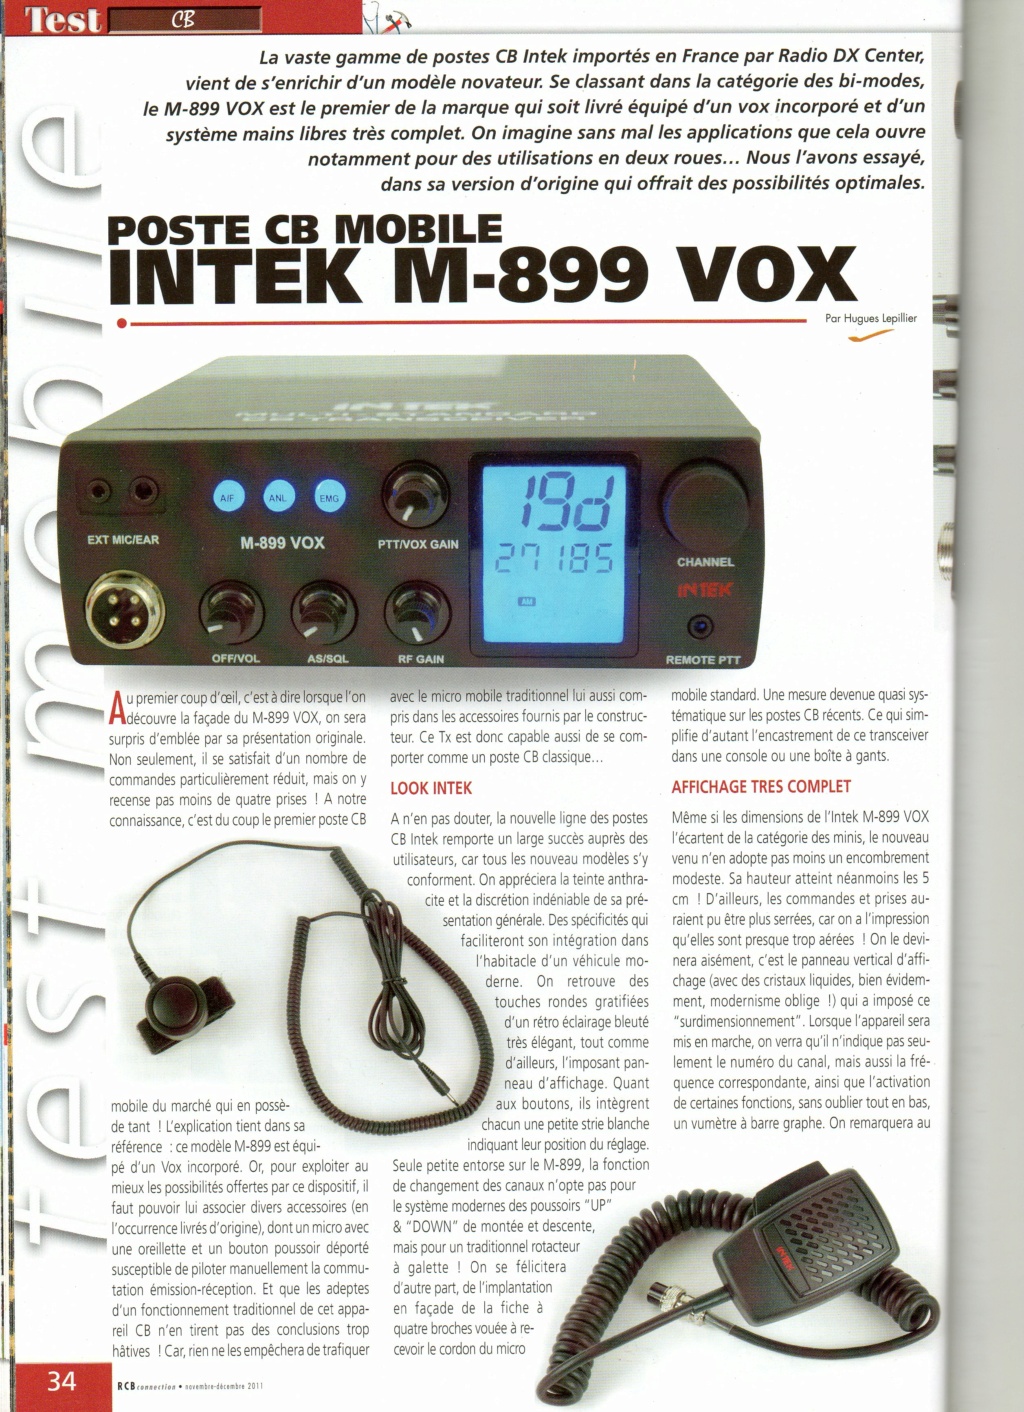 VOX - Intek M-899 Vox (Mobile) Img49811